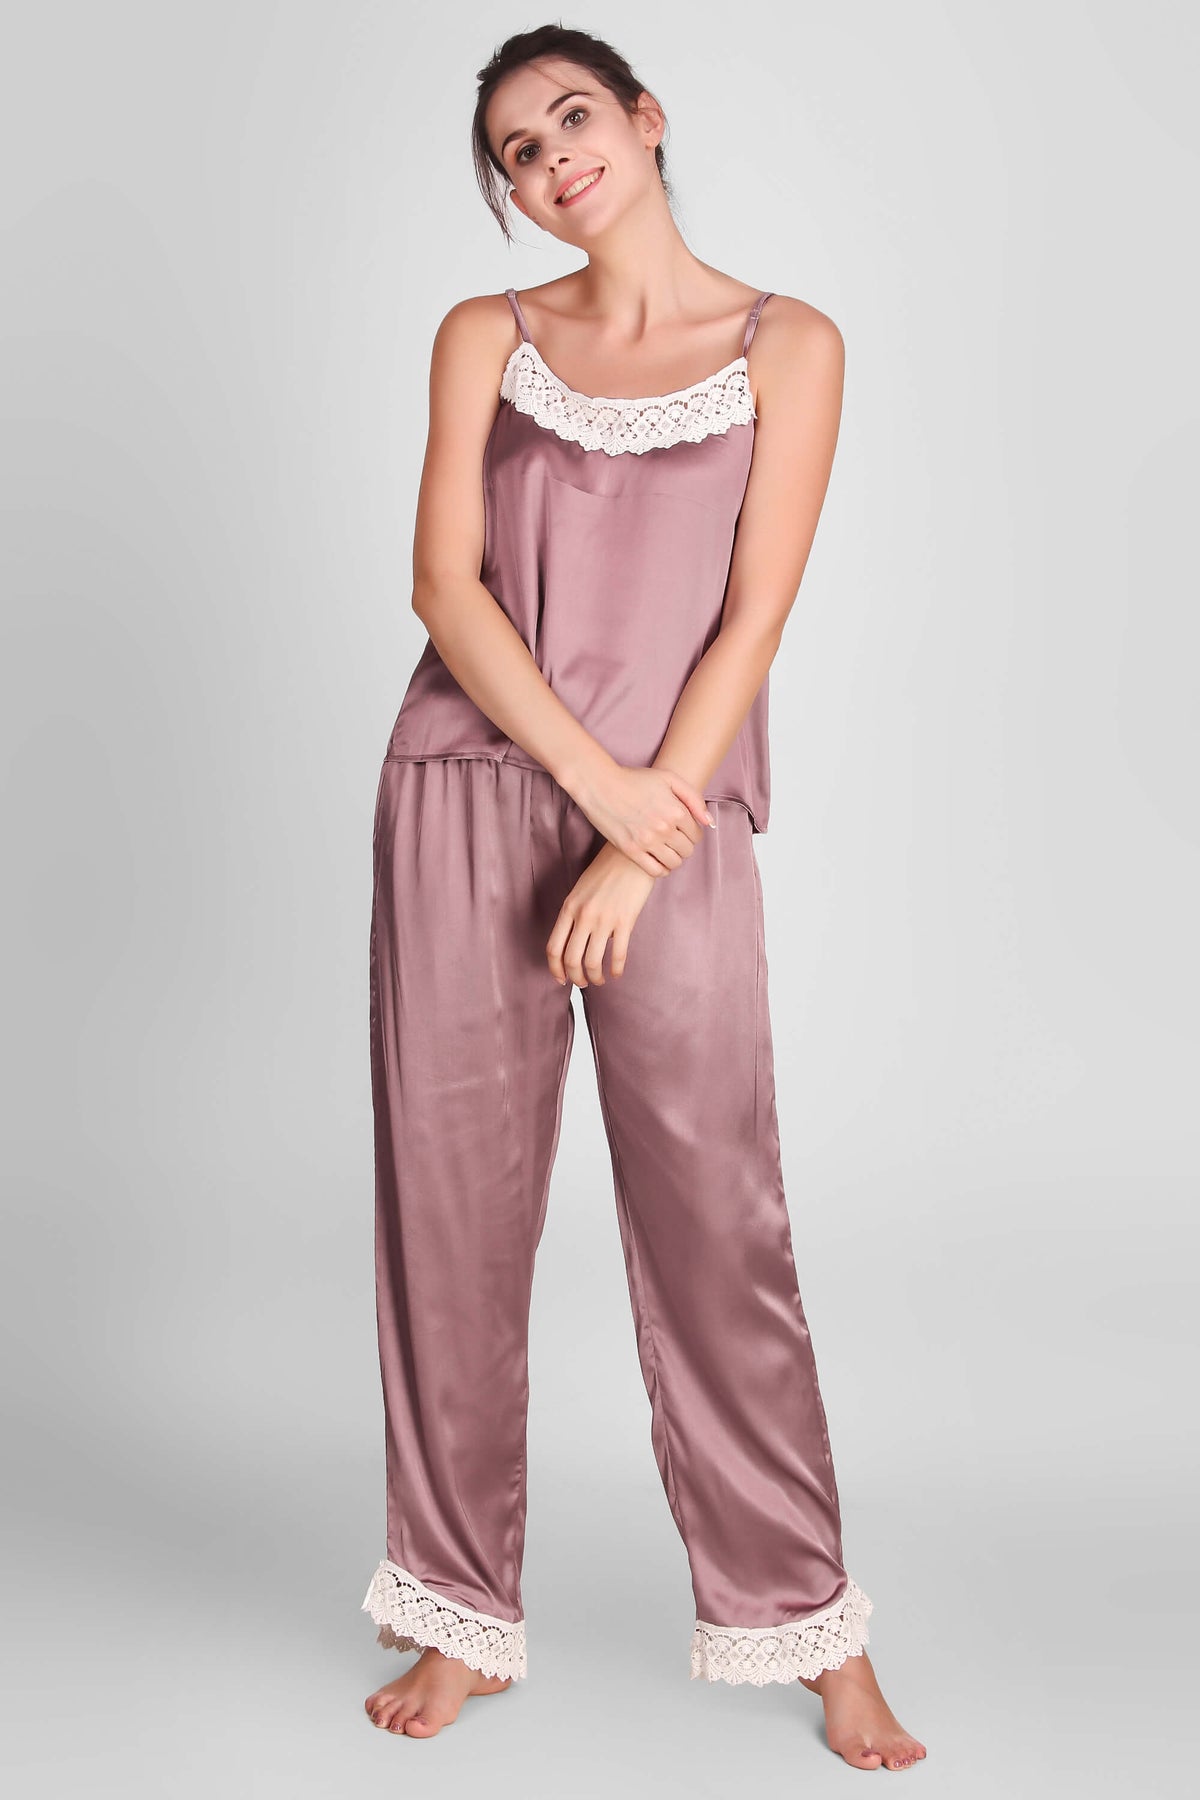 Yala, Pyjama Suit with Gown